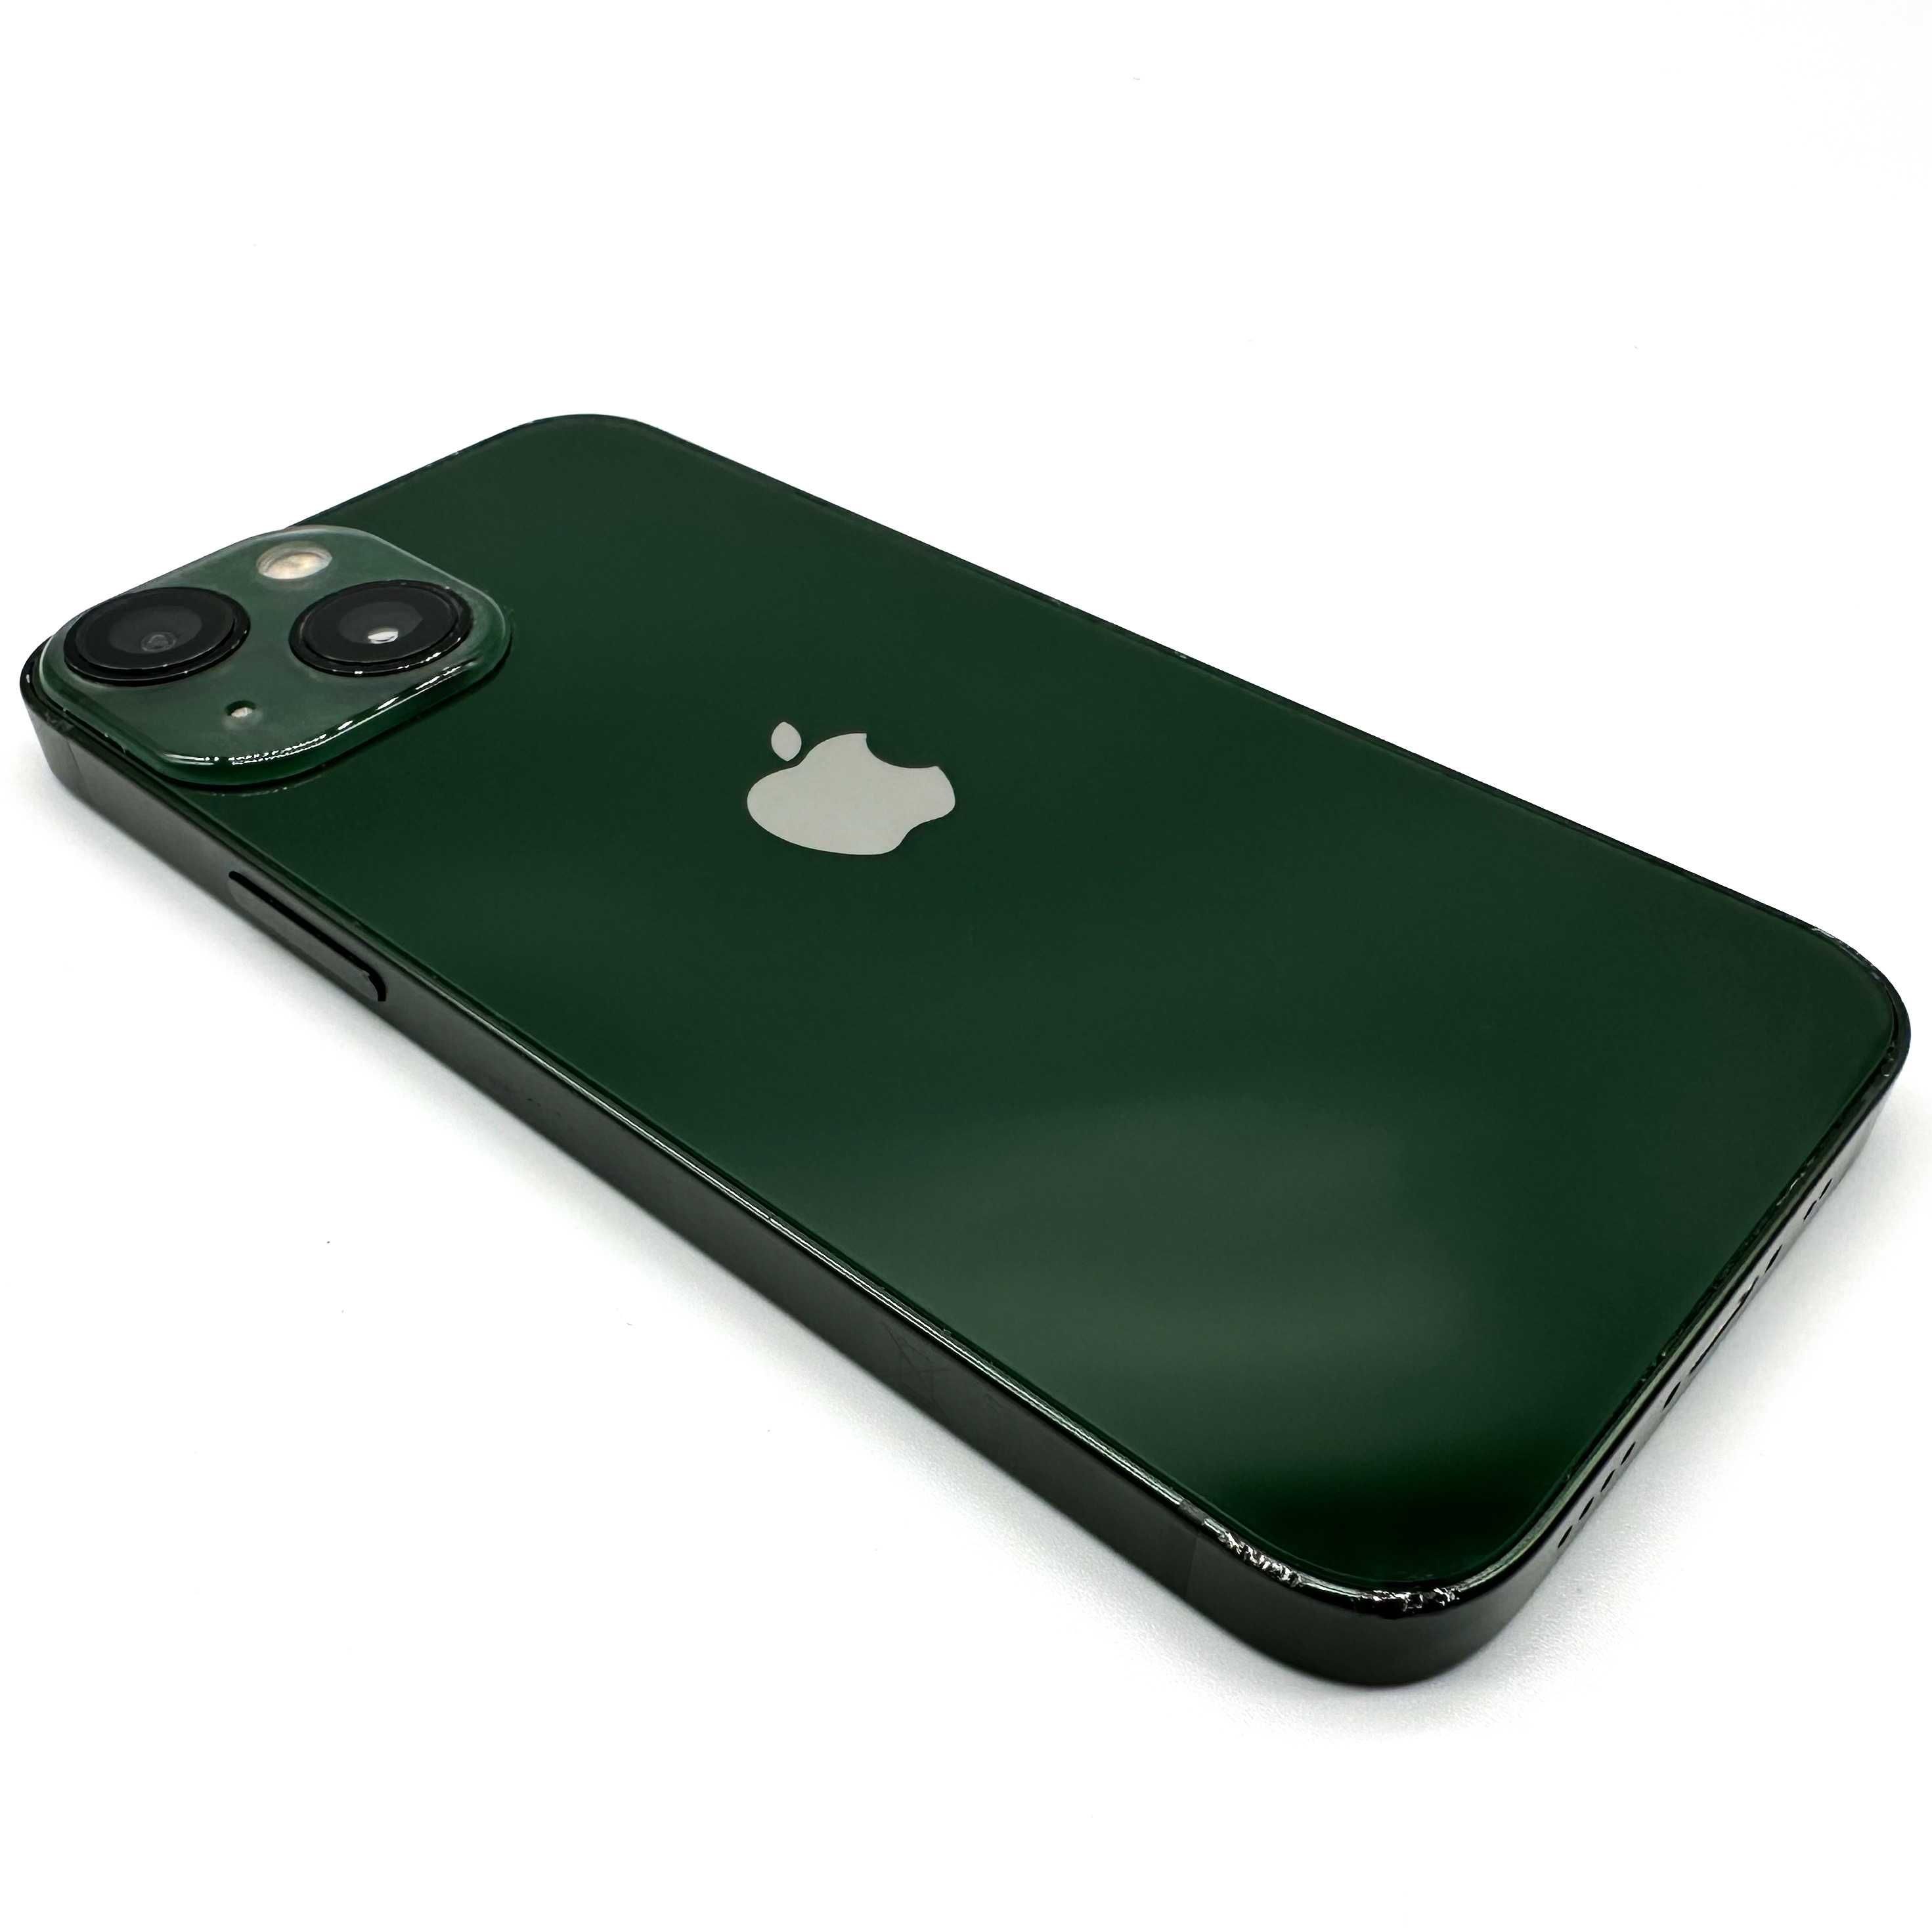 iPhone 13 Mini 128GB Zielony 1700zł Bateria 87% W-wa